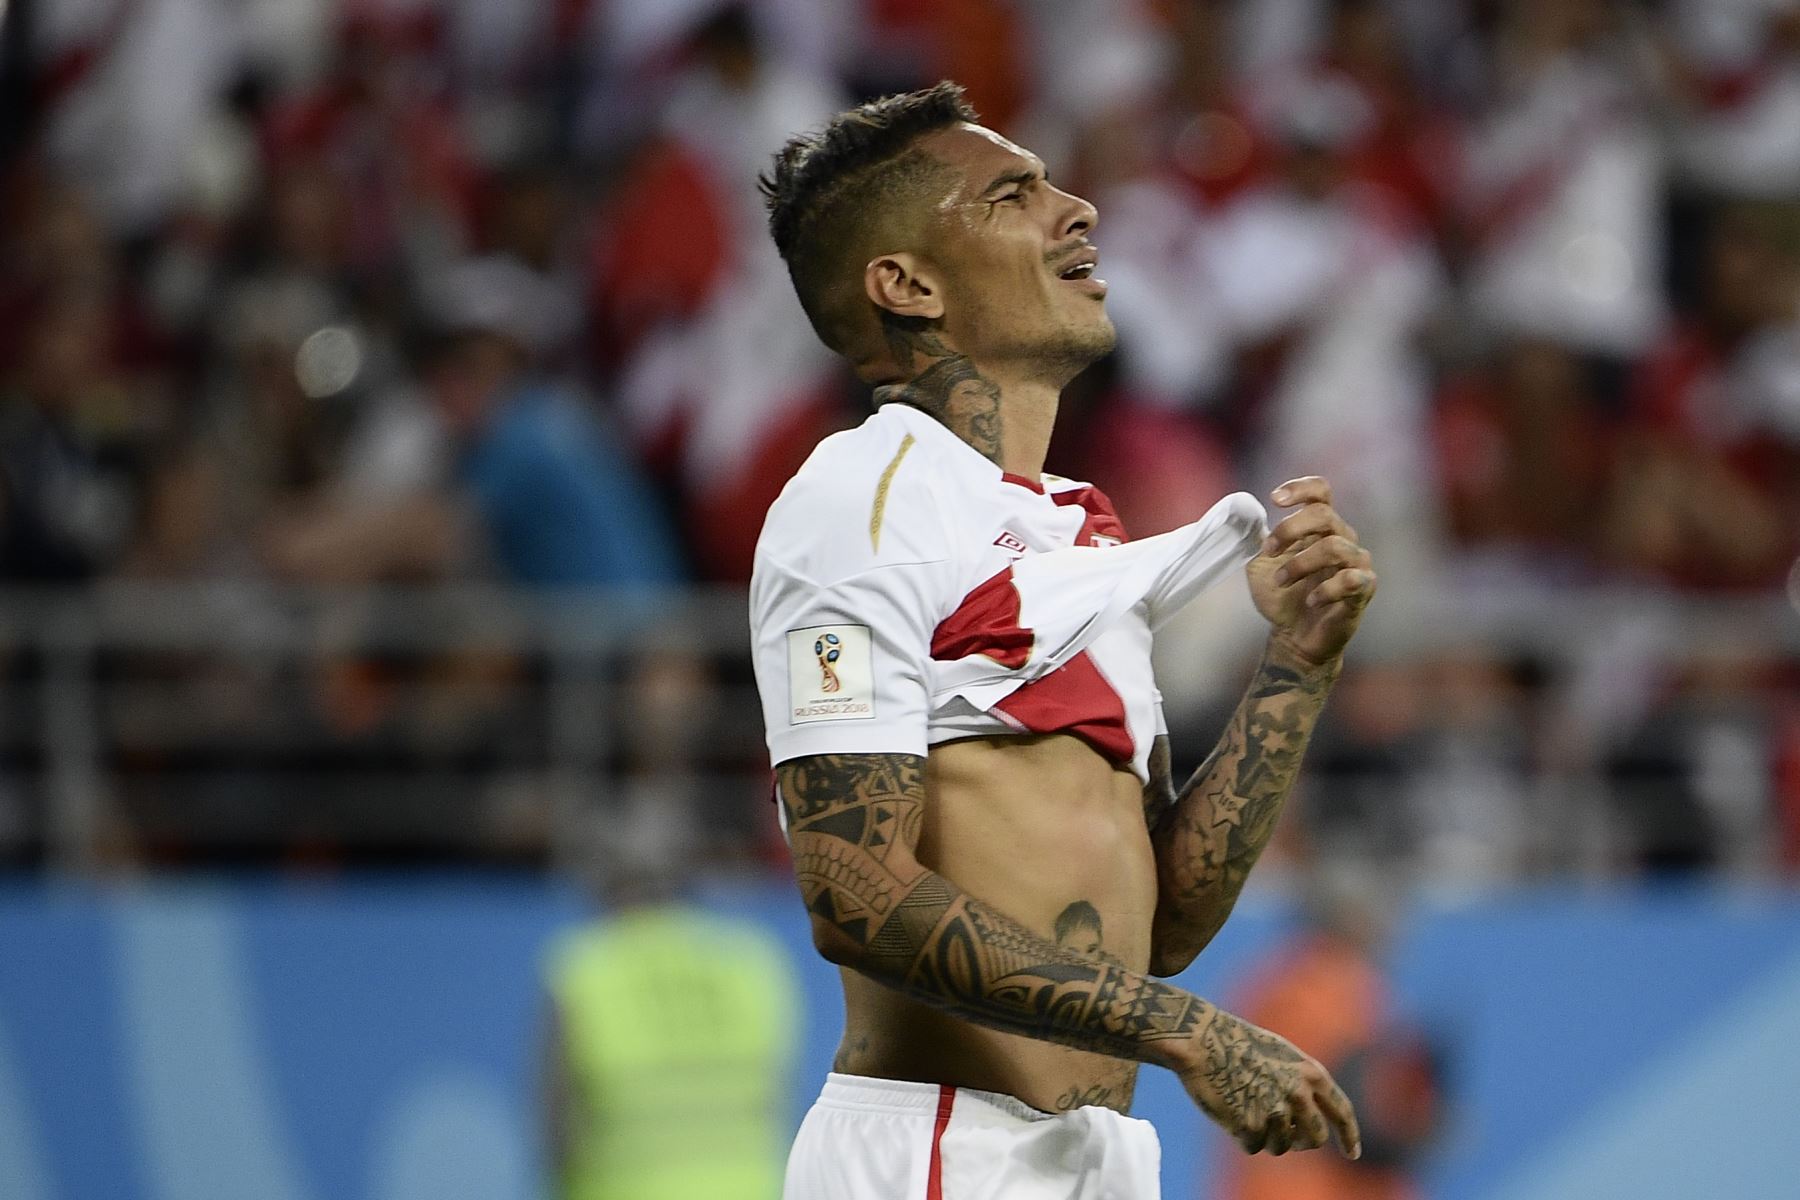 El delantero peruano Paolo Guerrero reacciona después de no anotar durante el partido de fútbol del Grupo C de la Copa Mundial Rusia 2018 entre Perú y Dinamarca en el Mordovia Arena en Saransk el 16 de junio de 2018.
F/ AFP